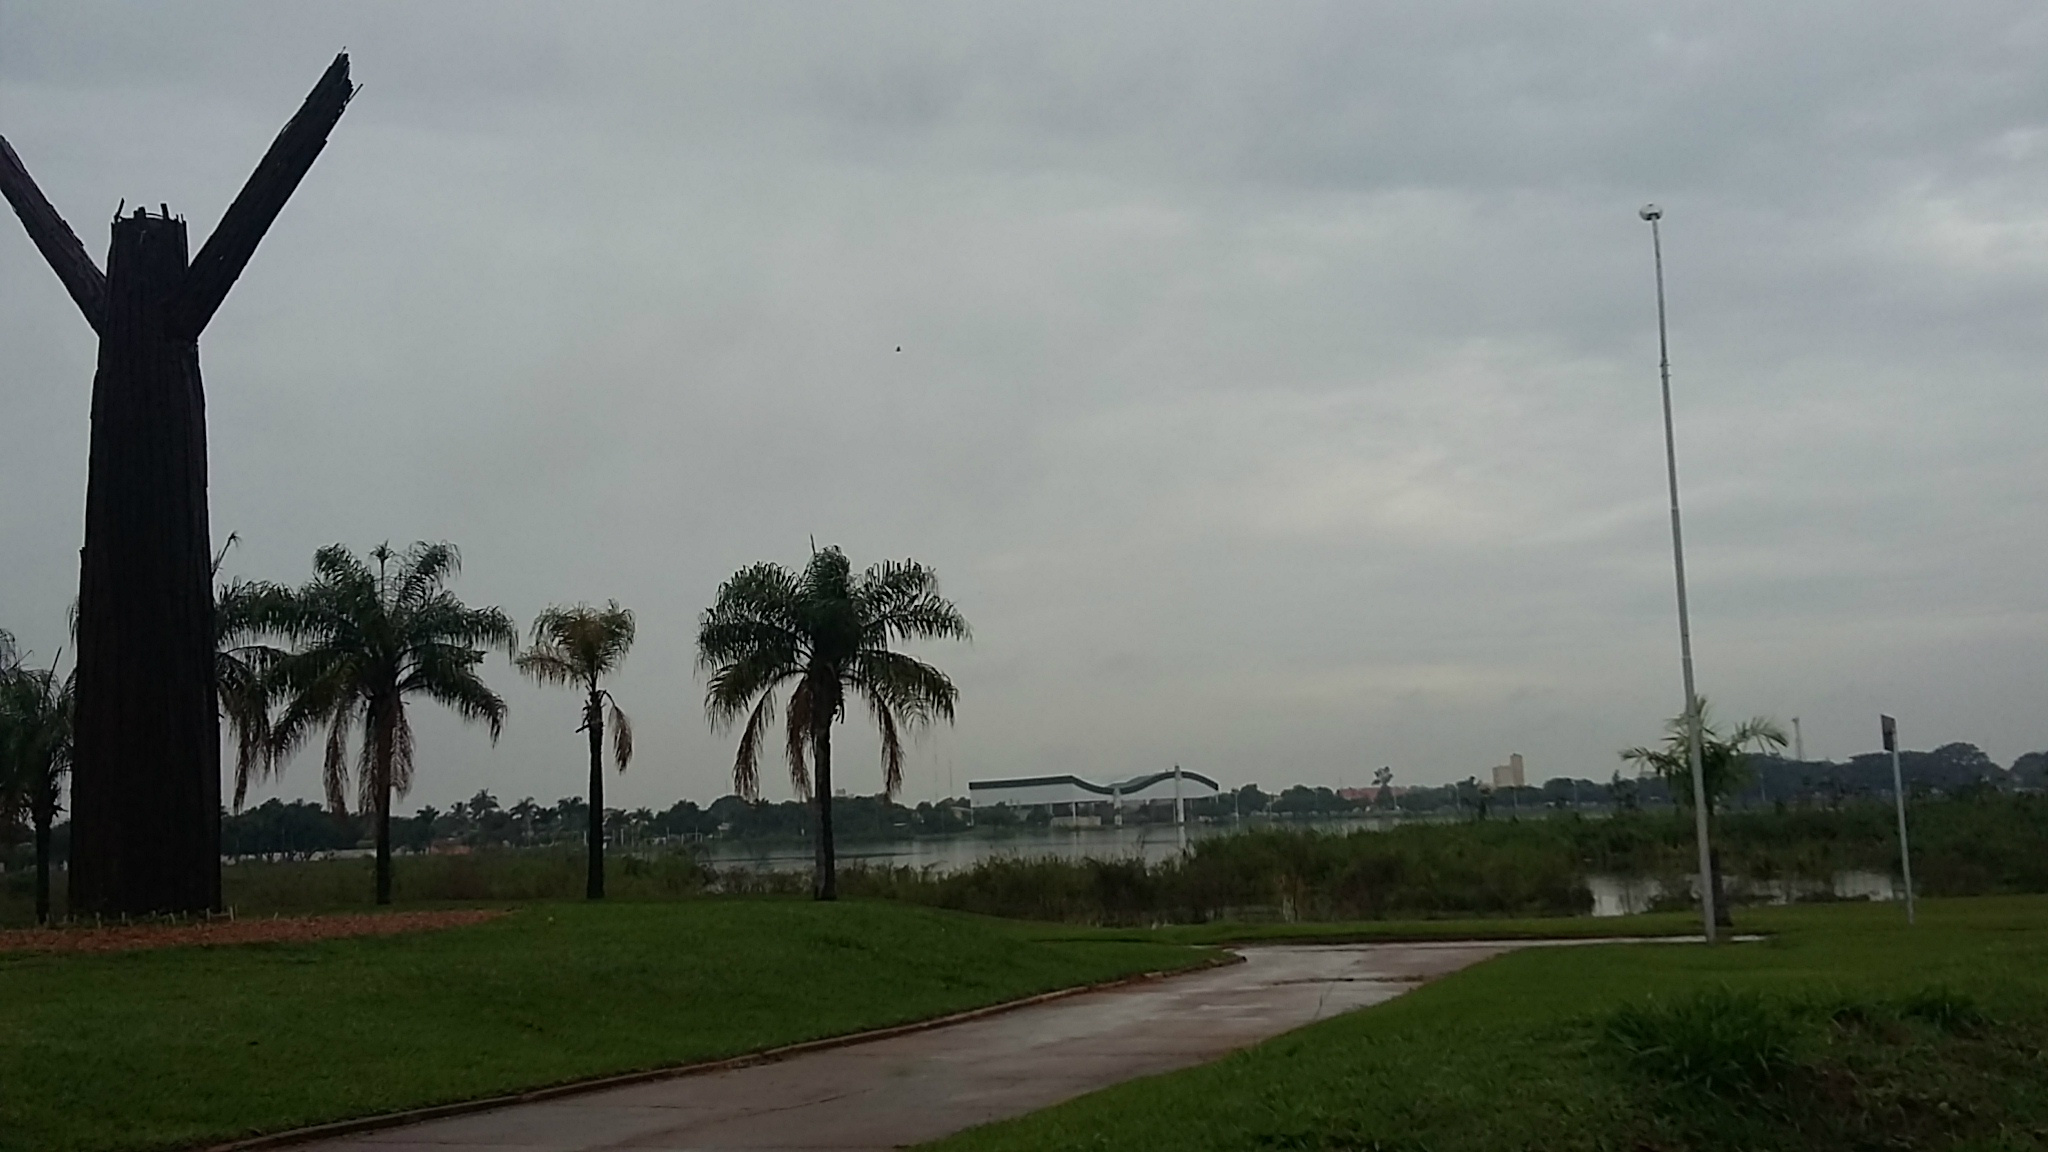 Céu nublado e pancadas de chuva iniciam a manhã em Três Lagoas. (Foto: Patrícia Miranda)